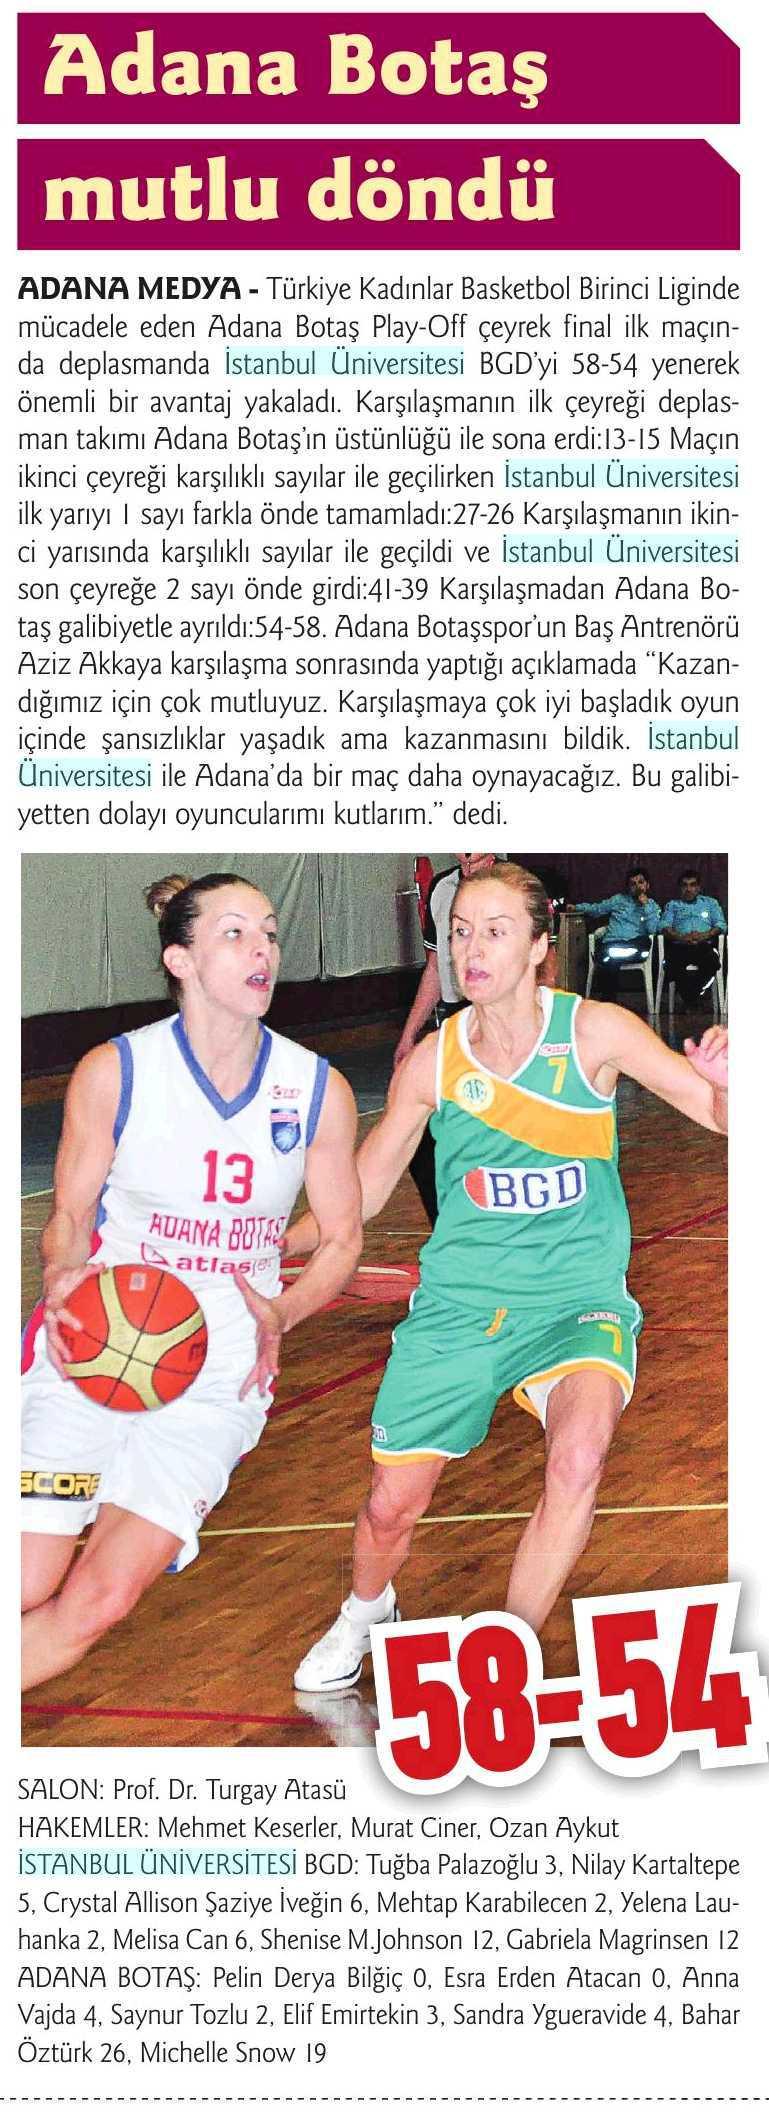 ADANA BOTAS MUTLU DÖNDÜ Yayın Adı : Adana Medya Sayfa : 12